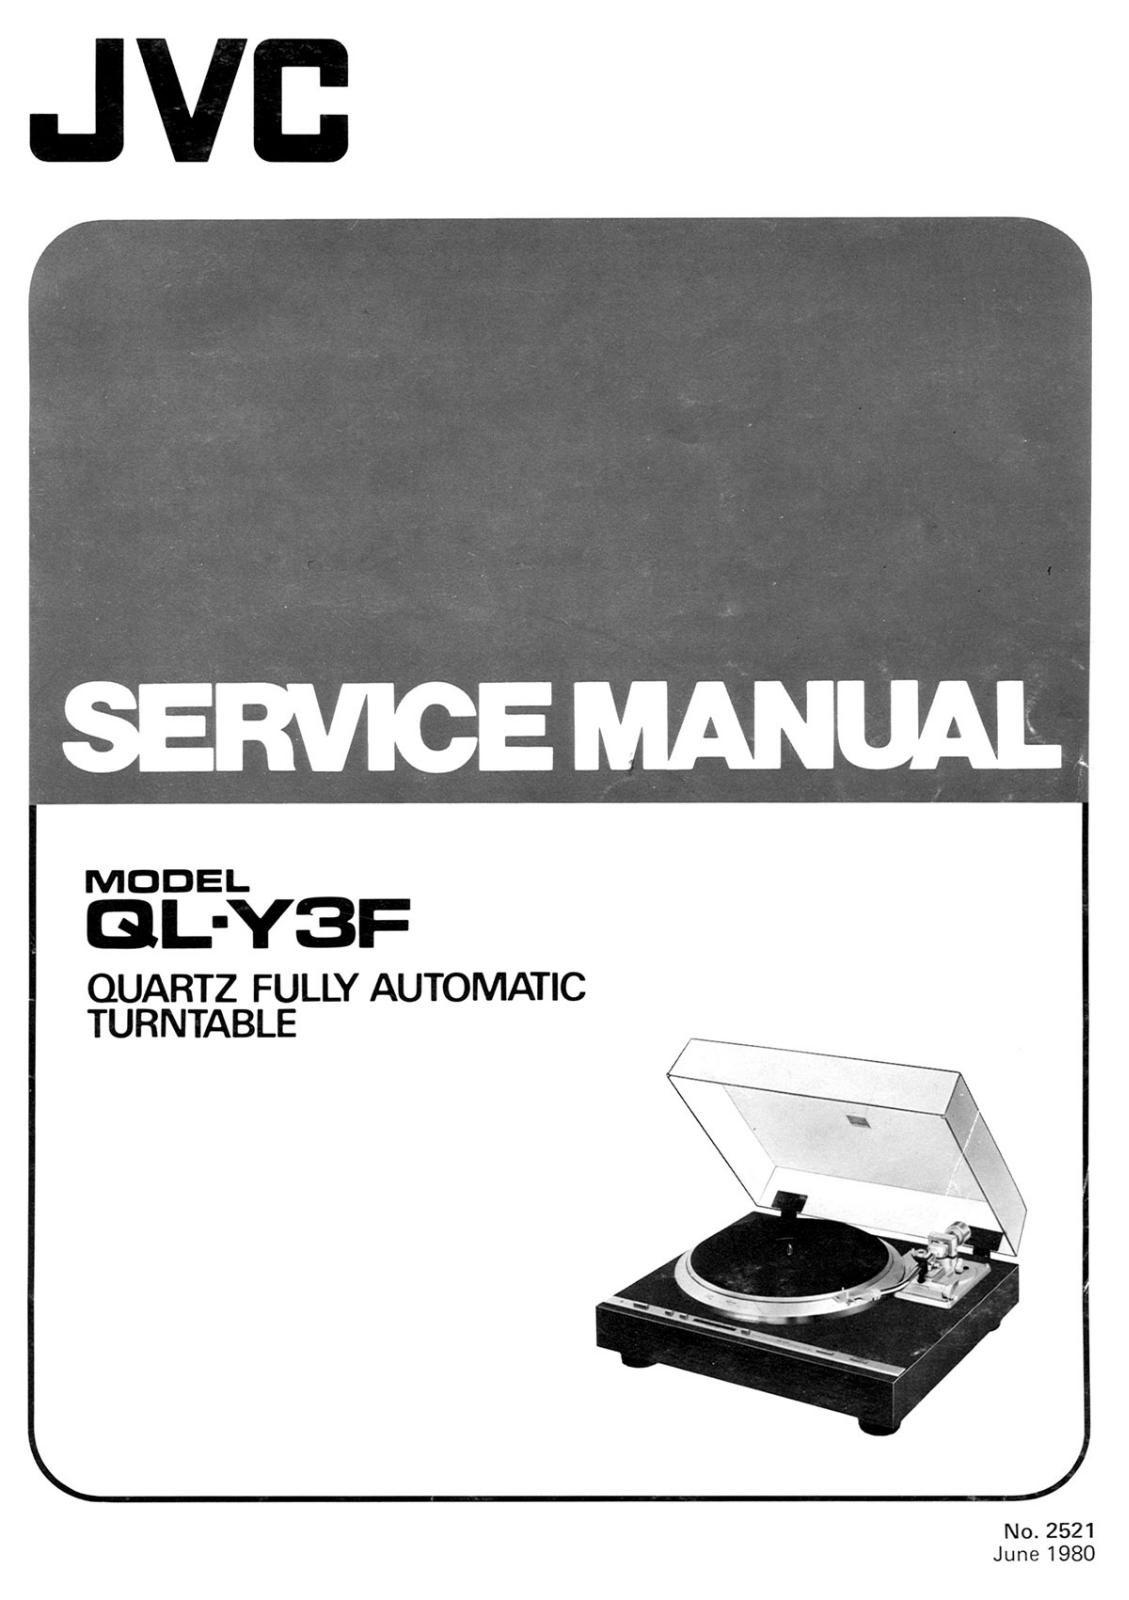 Service Manual-Anleitung für JVC QL-Y3 F 